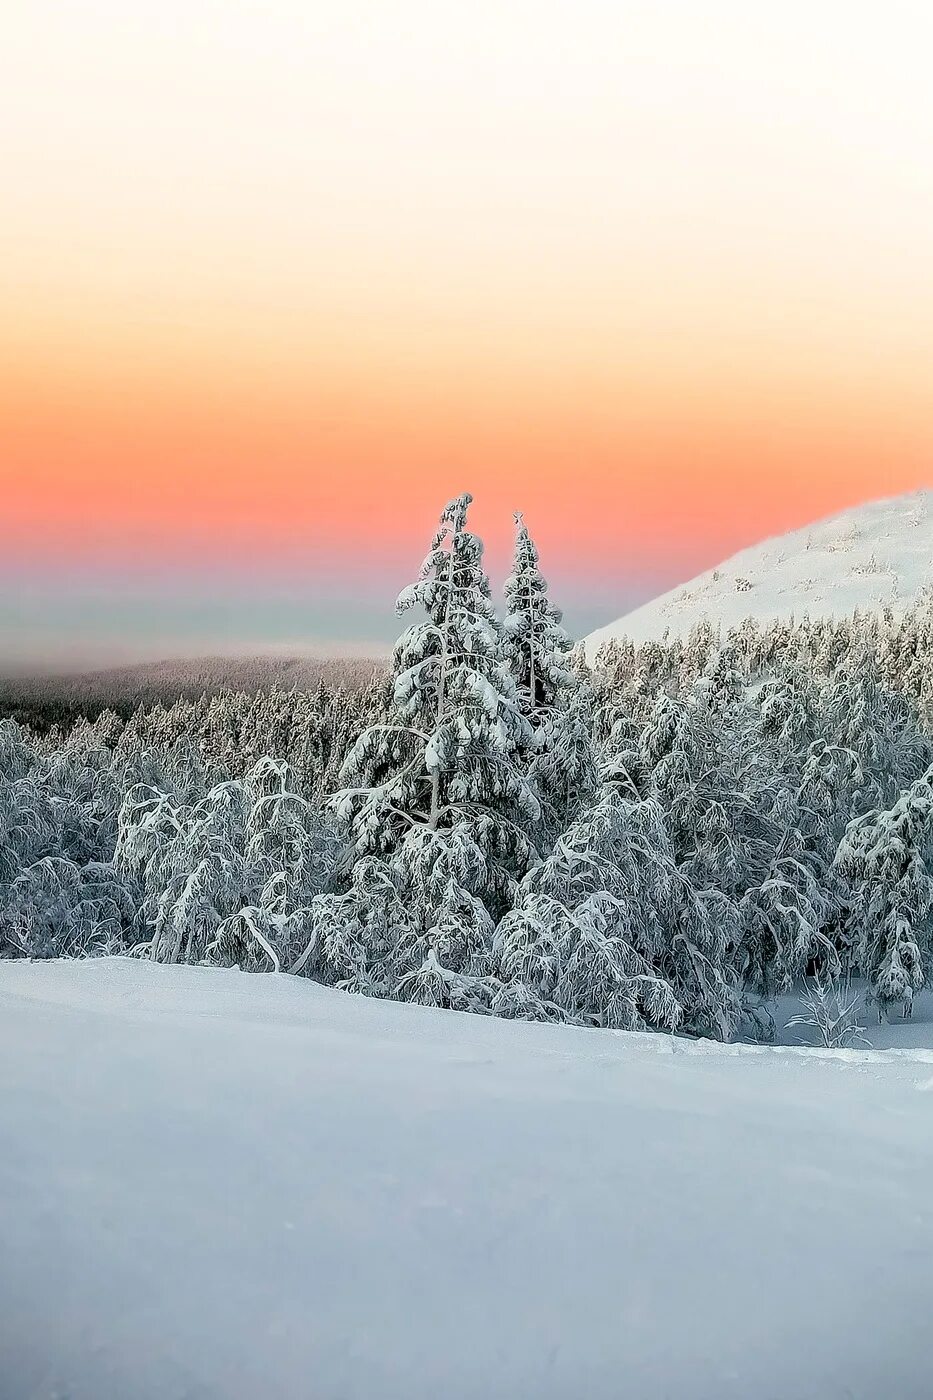 Финляндия январь. Январь фото. Финляндия в январе. Фото небо сосны зима. Фото 960×1280 севера днём.